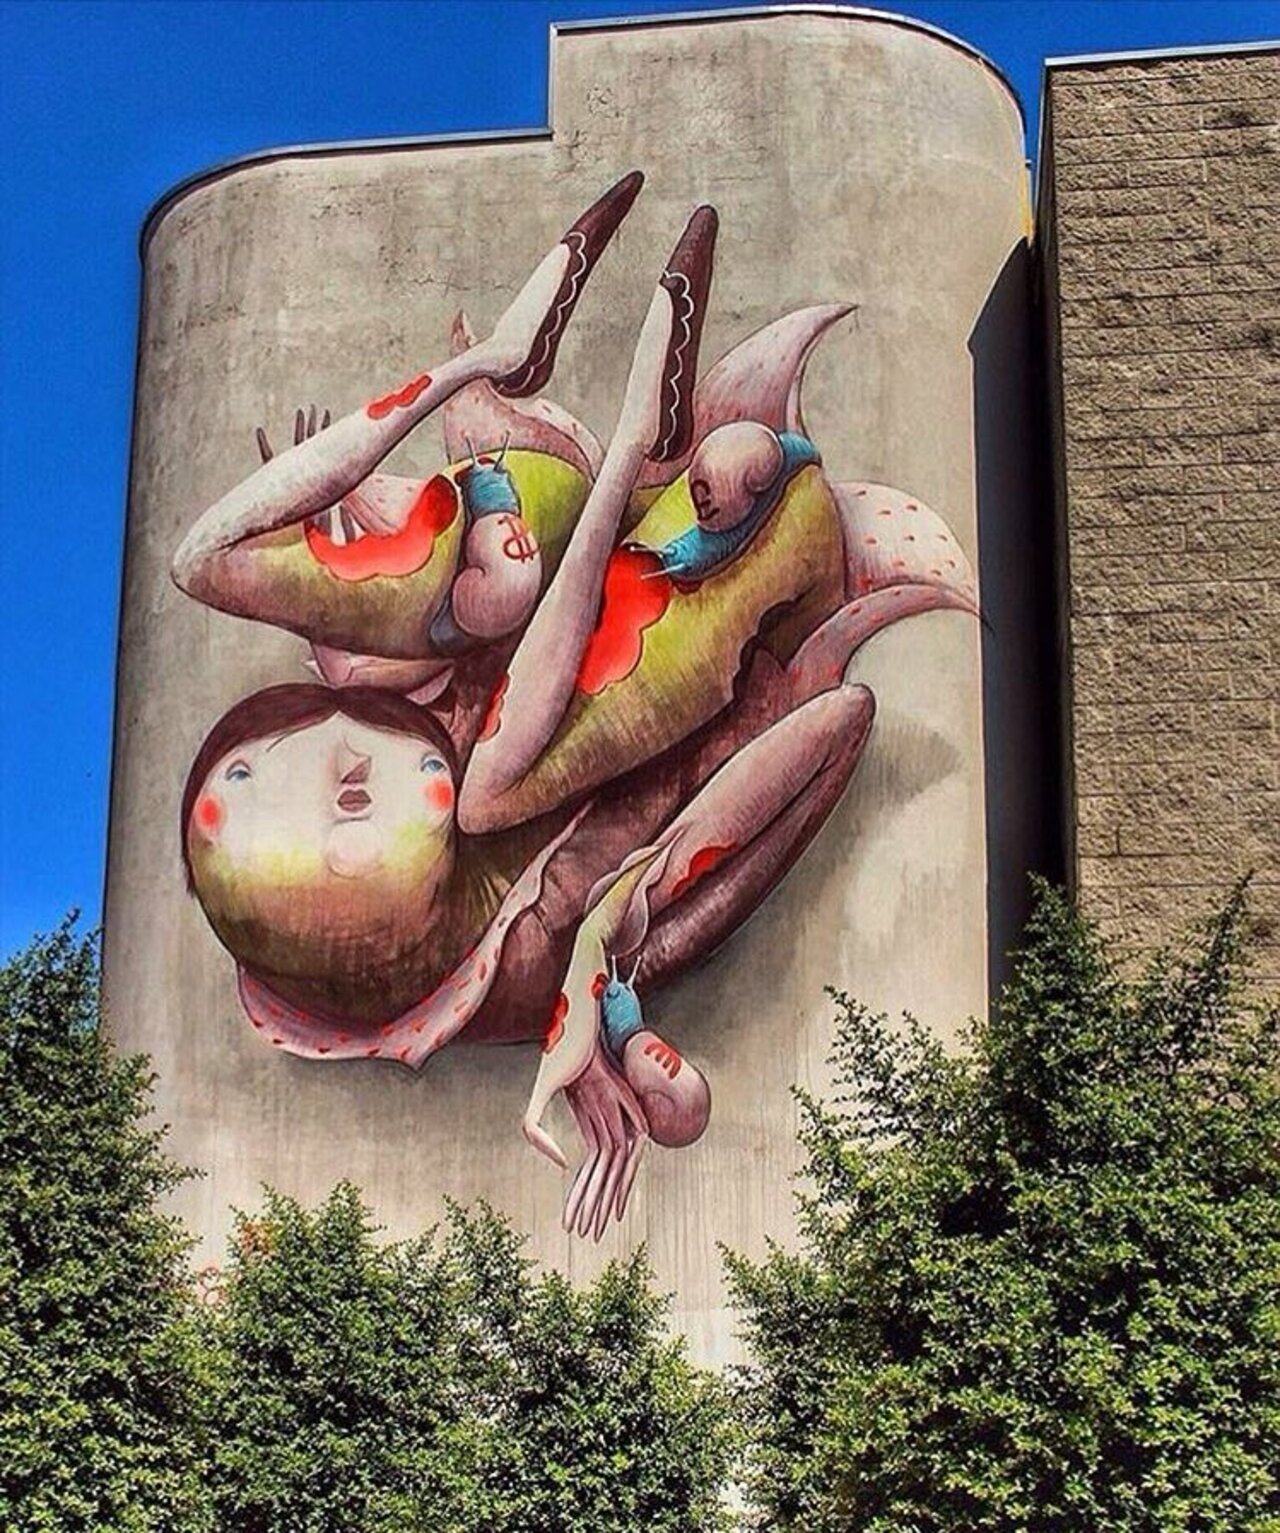 Street Art by Zed1  Ravenna Italy 🇮🇹 #art #mural #graffiti #streetart https://t.co/cDeKZdwv79